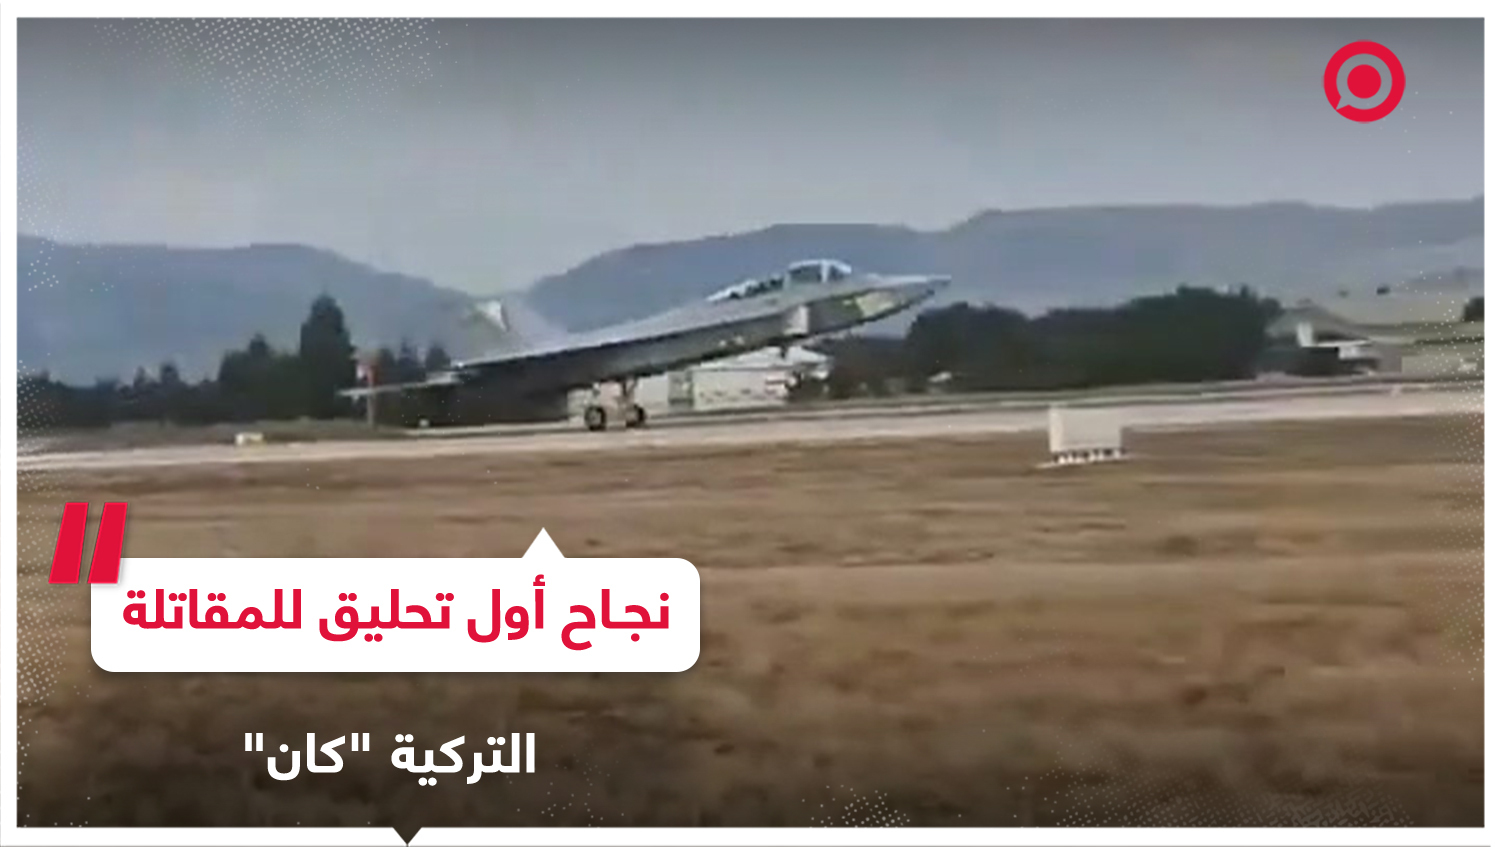 تركيا تعلن عن نجاح أول تحليق للطائرة المقاتلة "كان"